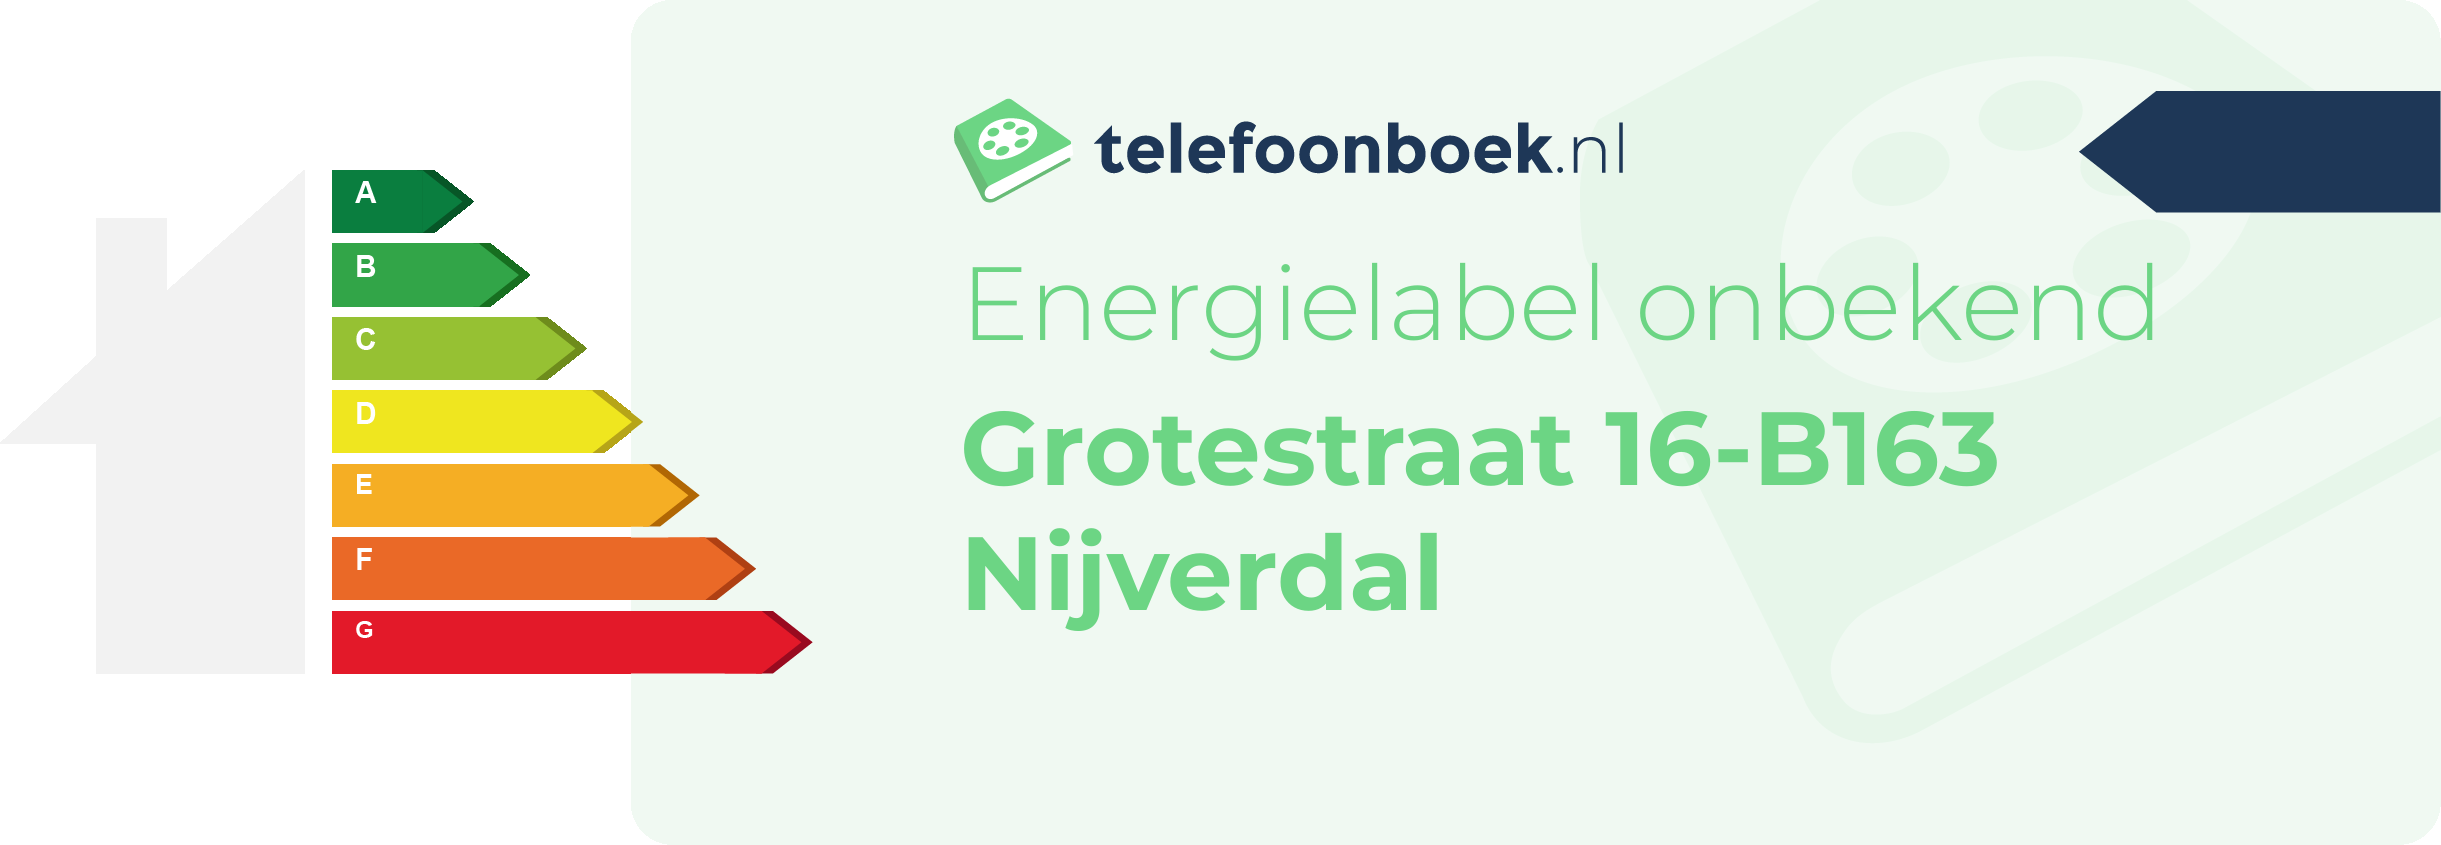 Energielabel Grotestraat 16-B163 Nijverdal